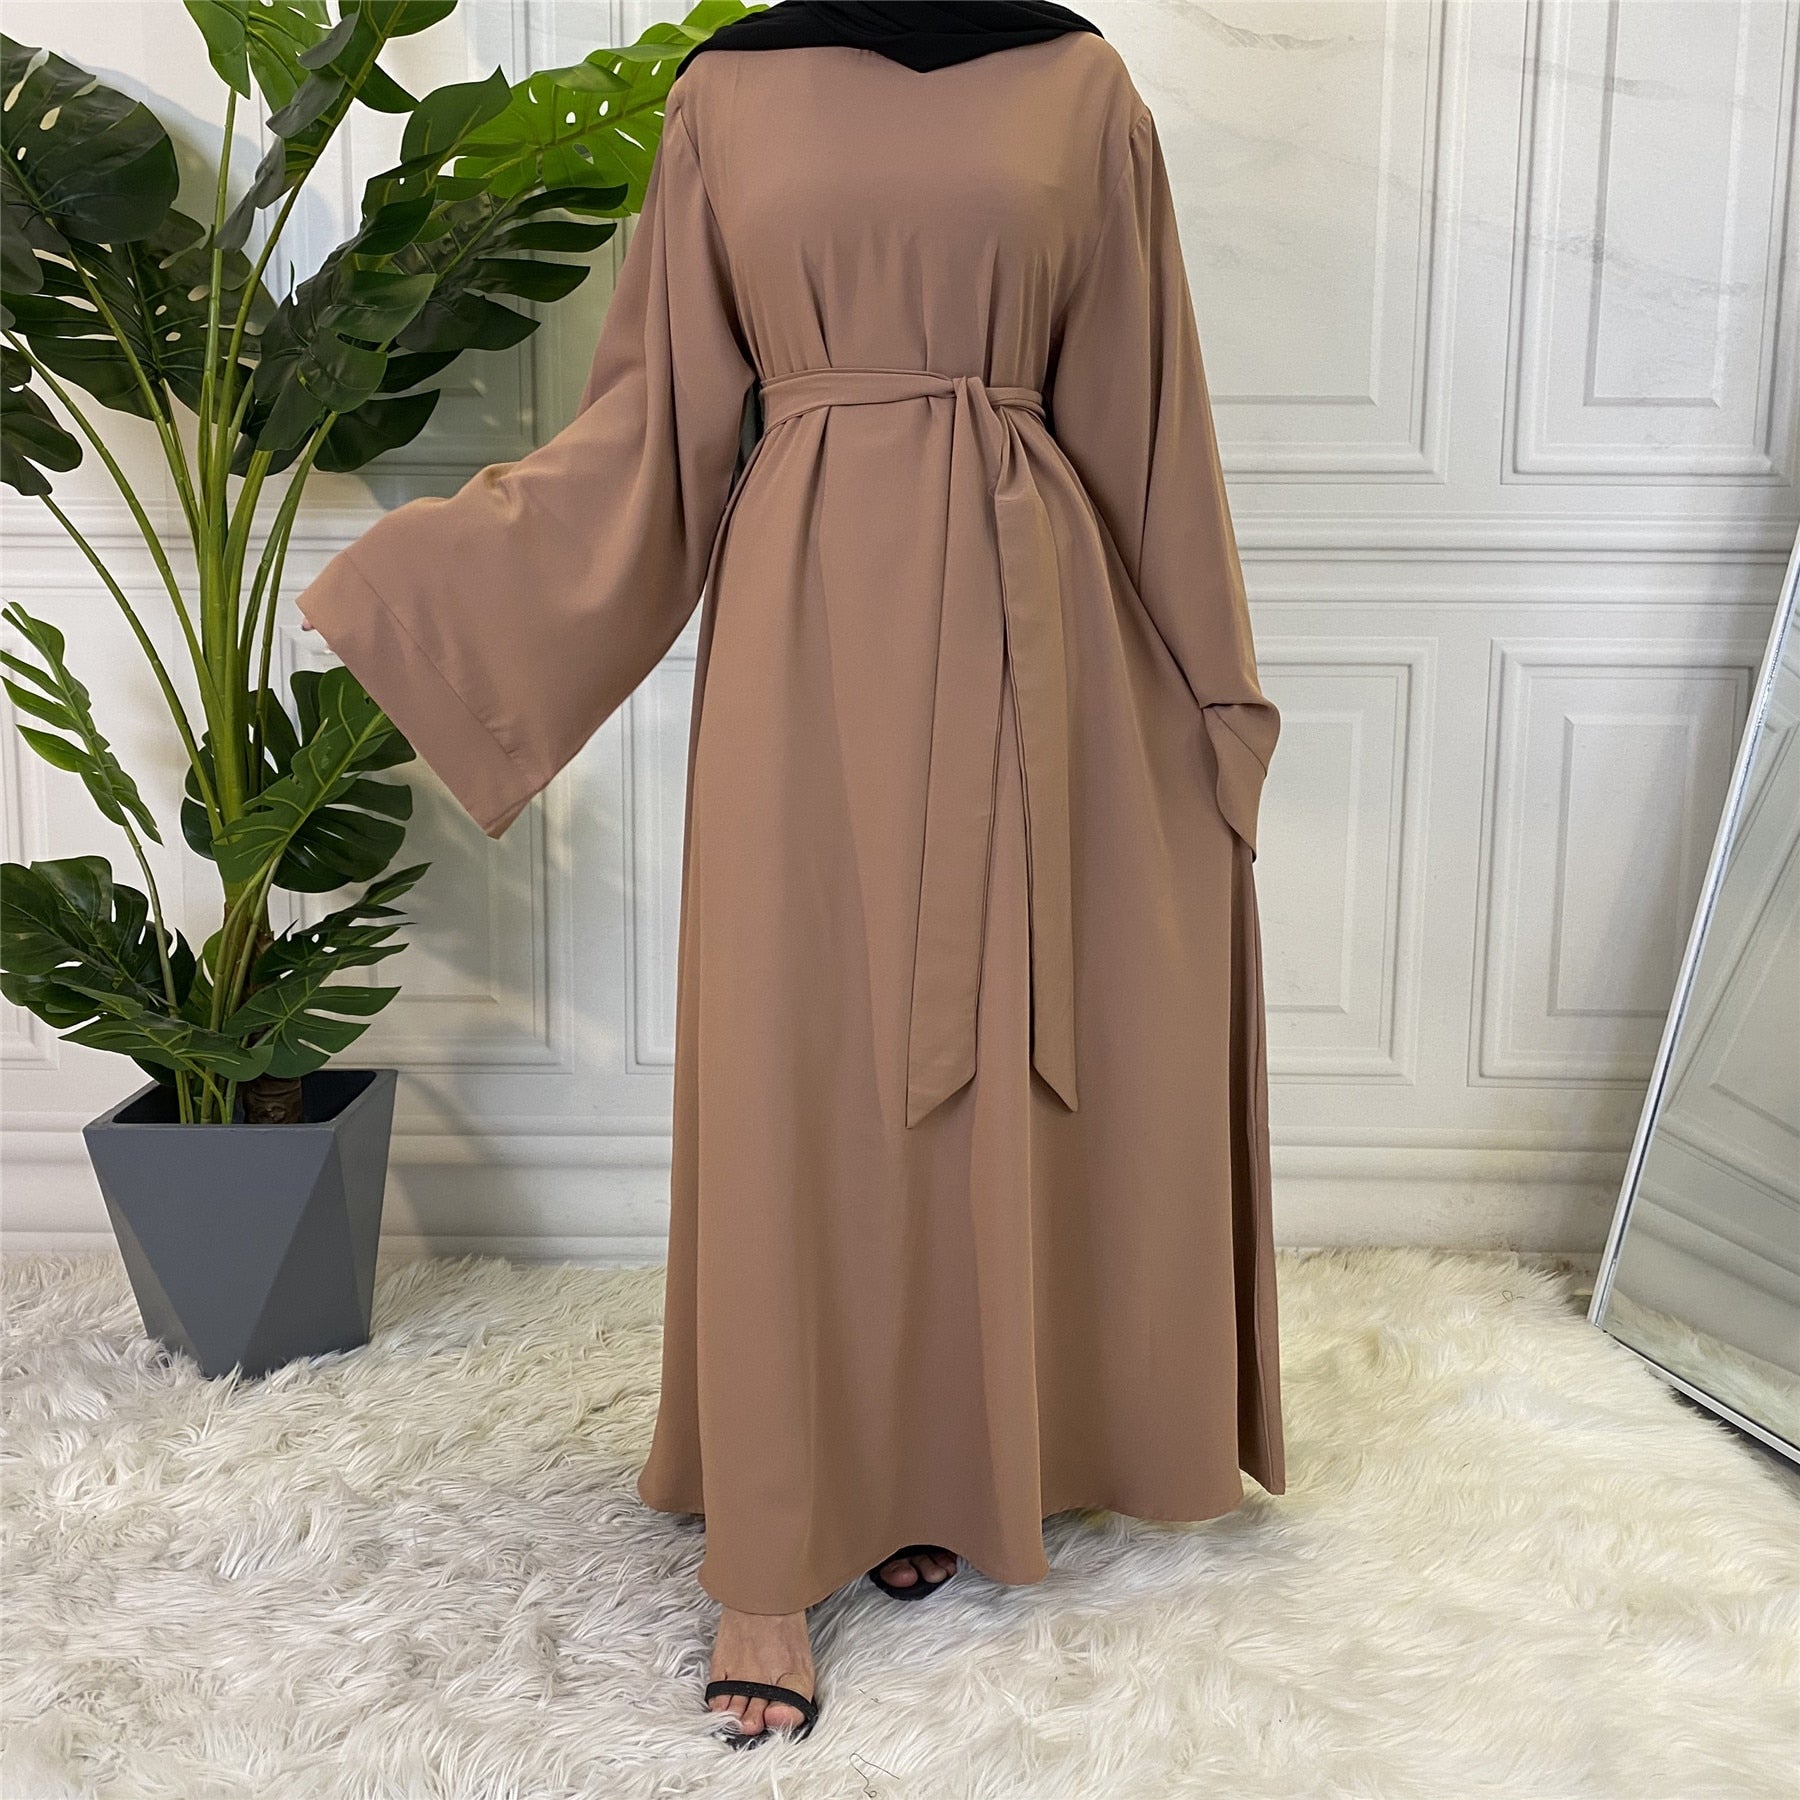 Muslim Fashion Hijab